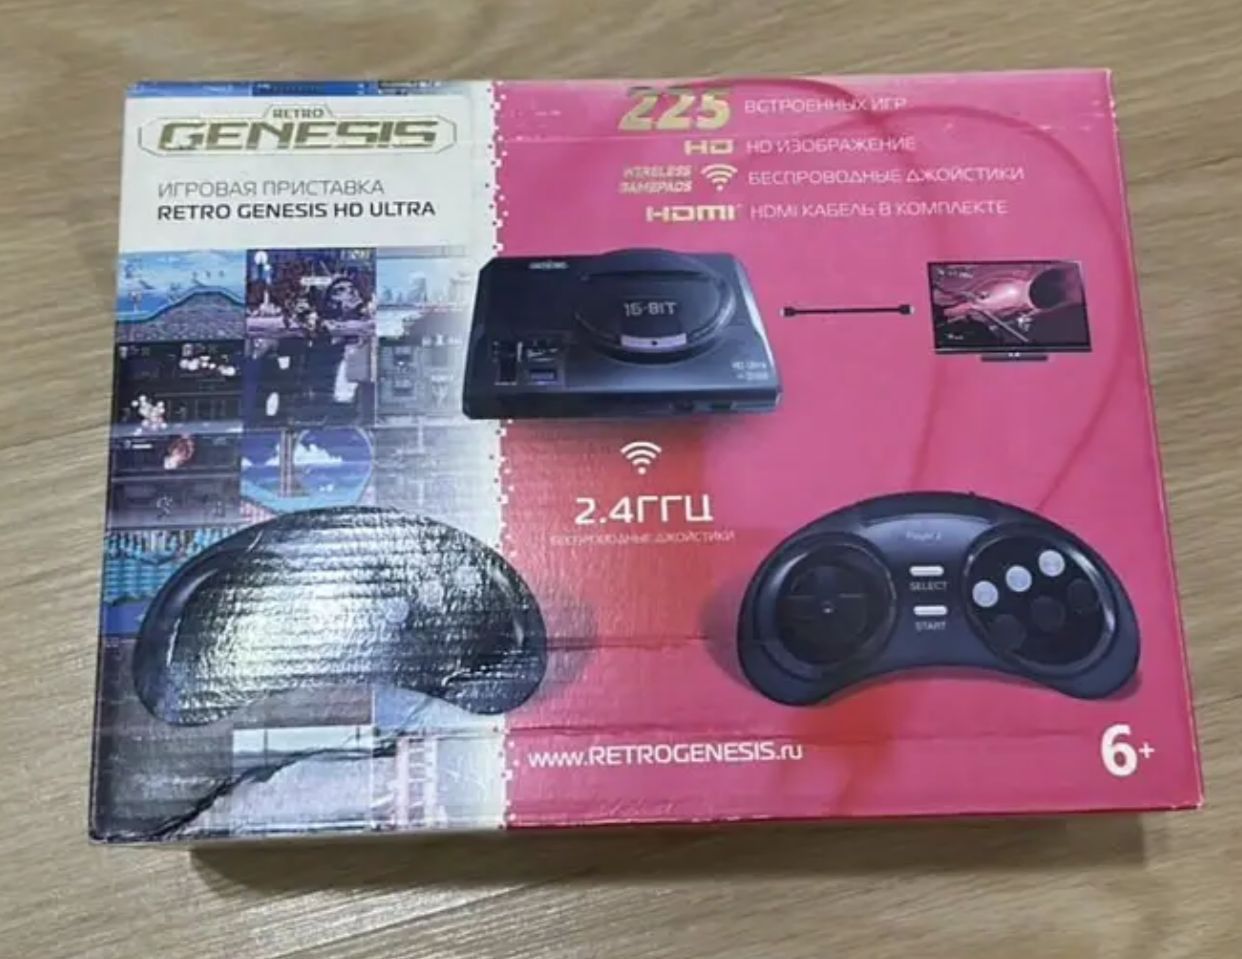 SEGA Retro Genesis HD Ultra c 225 встроенными играми